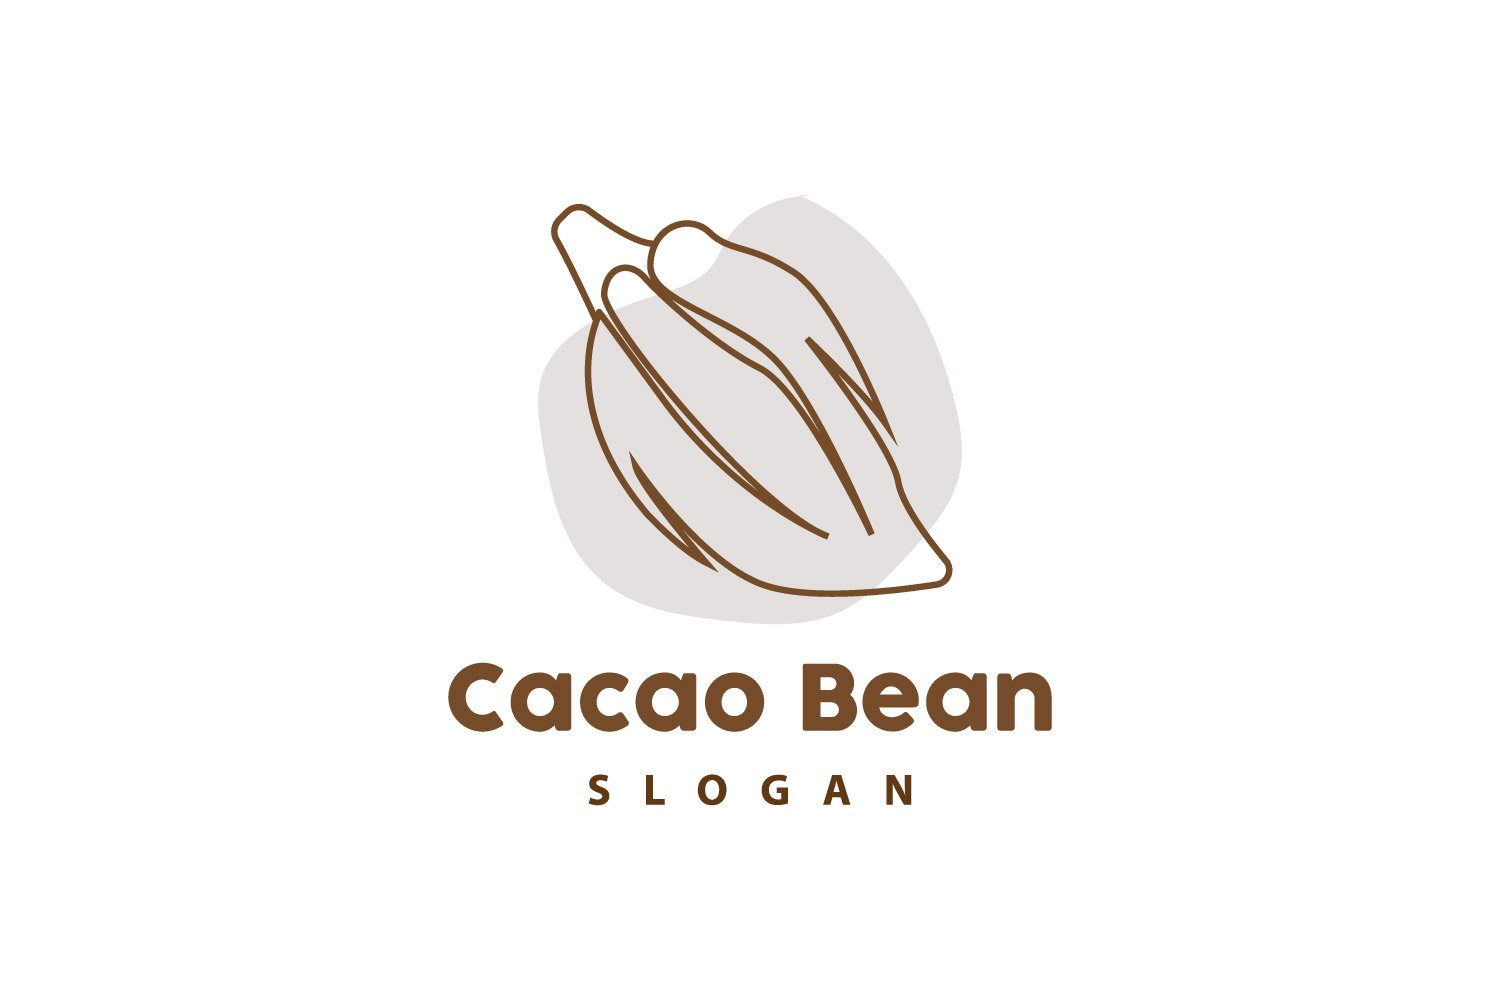 Cacao Bean Logo Premium Design VintageV1